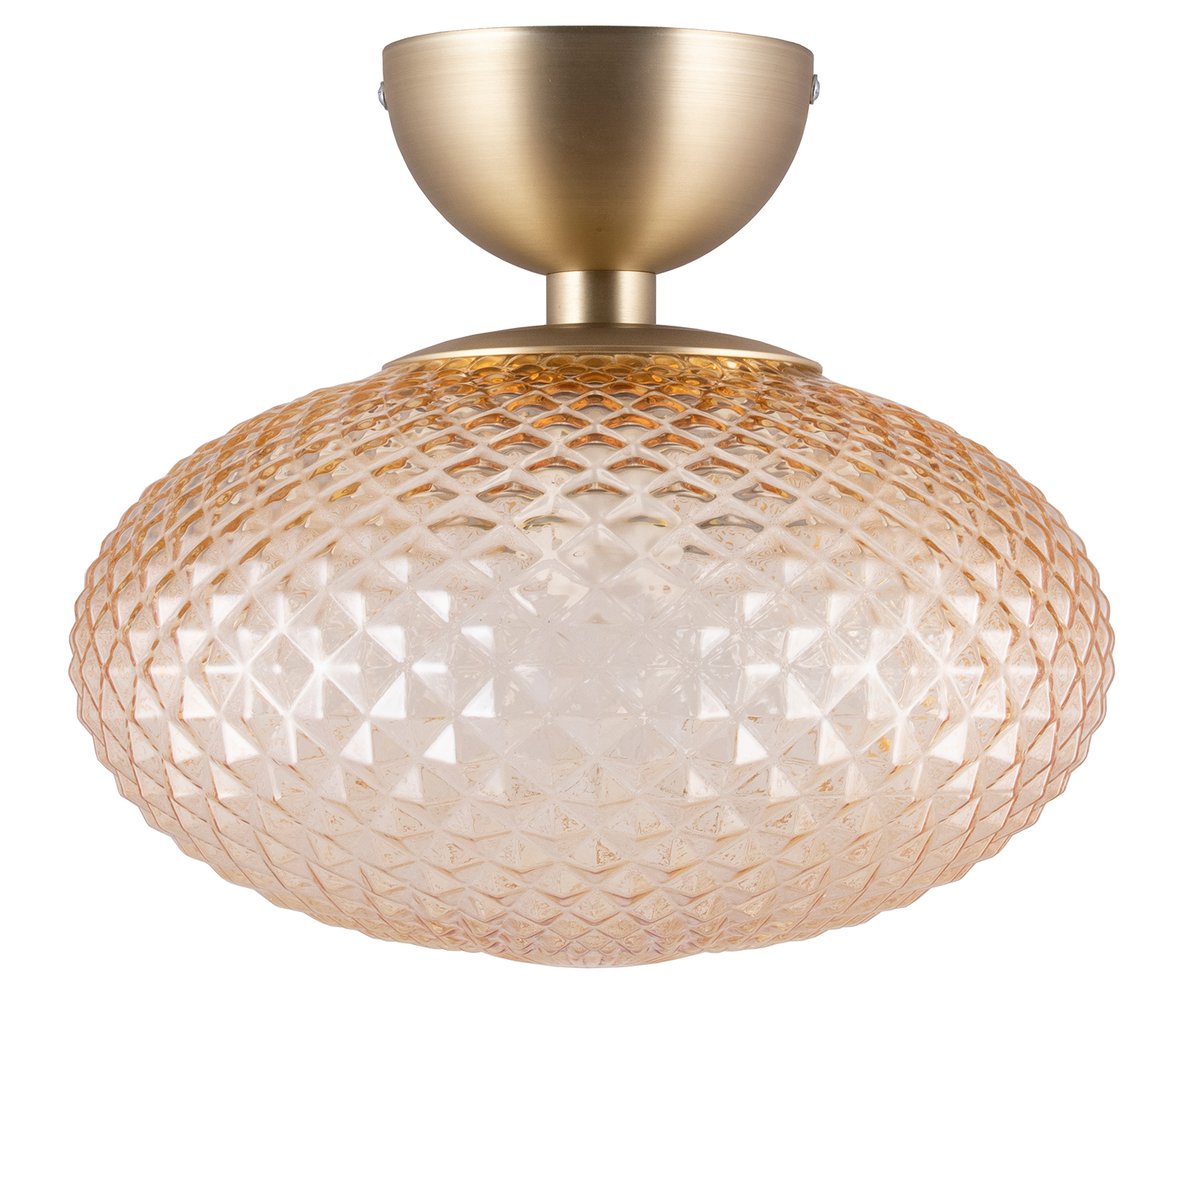 Globen Lighting Jackson plafondlamp Ø28 cm Amber